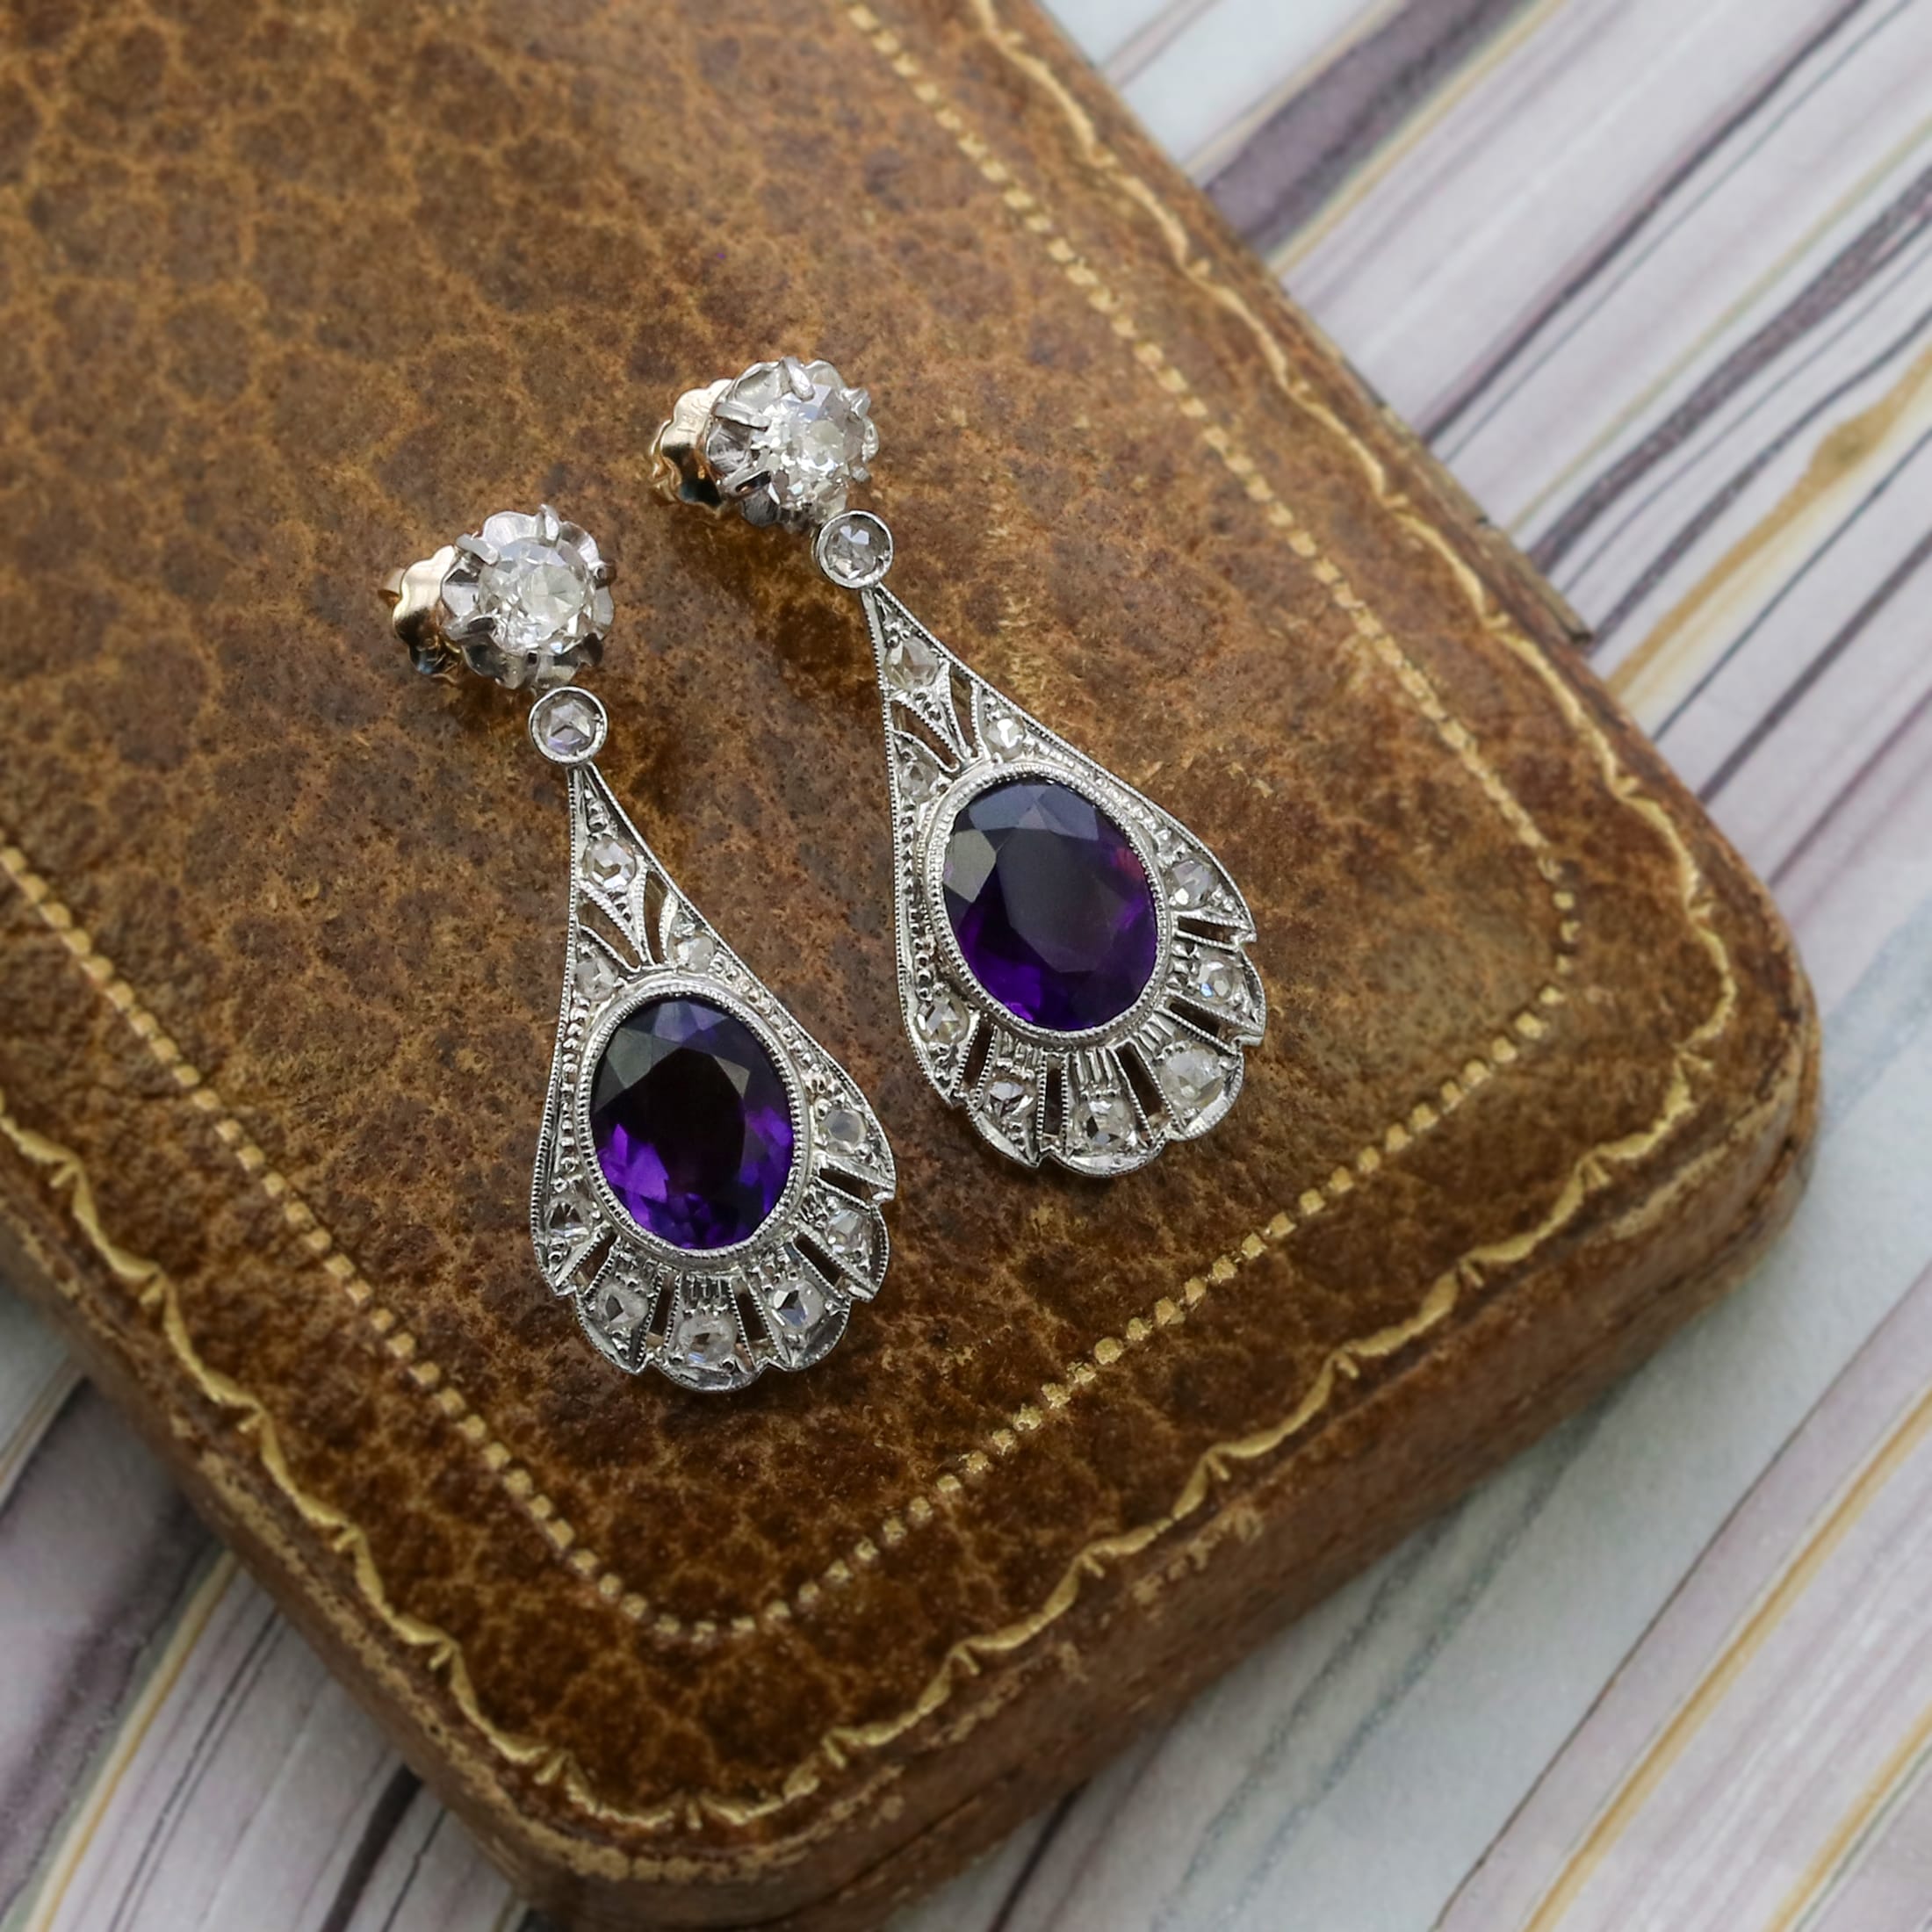 Edwardian diamond and amethyst drop earrings.